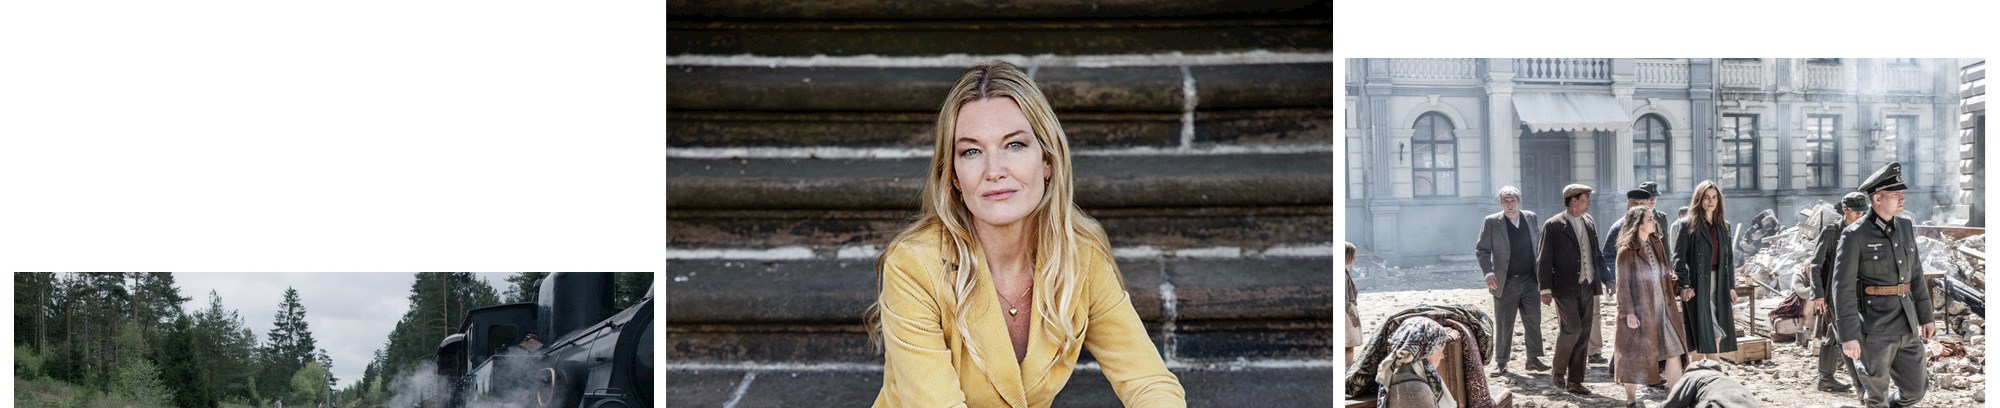 Anne Grethe Bjarup Riis - filminstruktør - foredrag om film i Randers Hvidstengruppen 2 - de efterladte